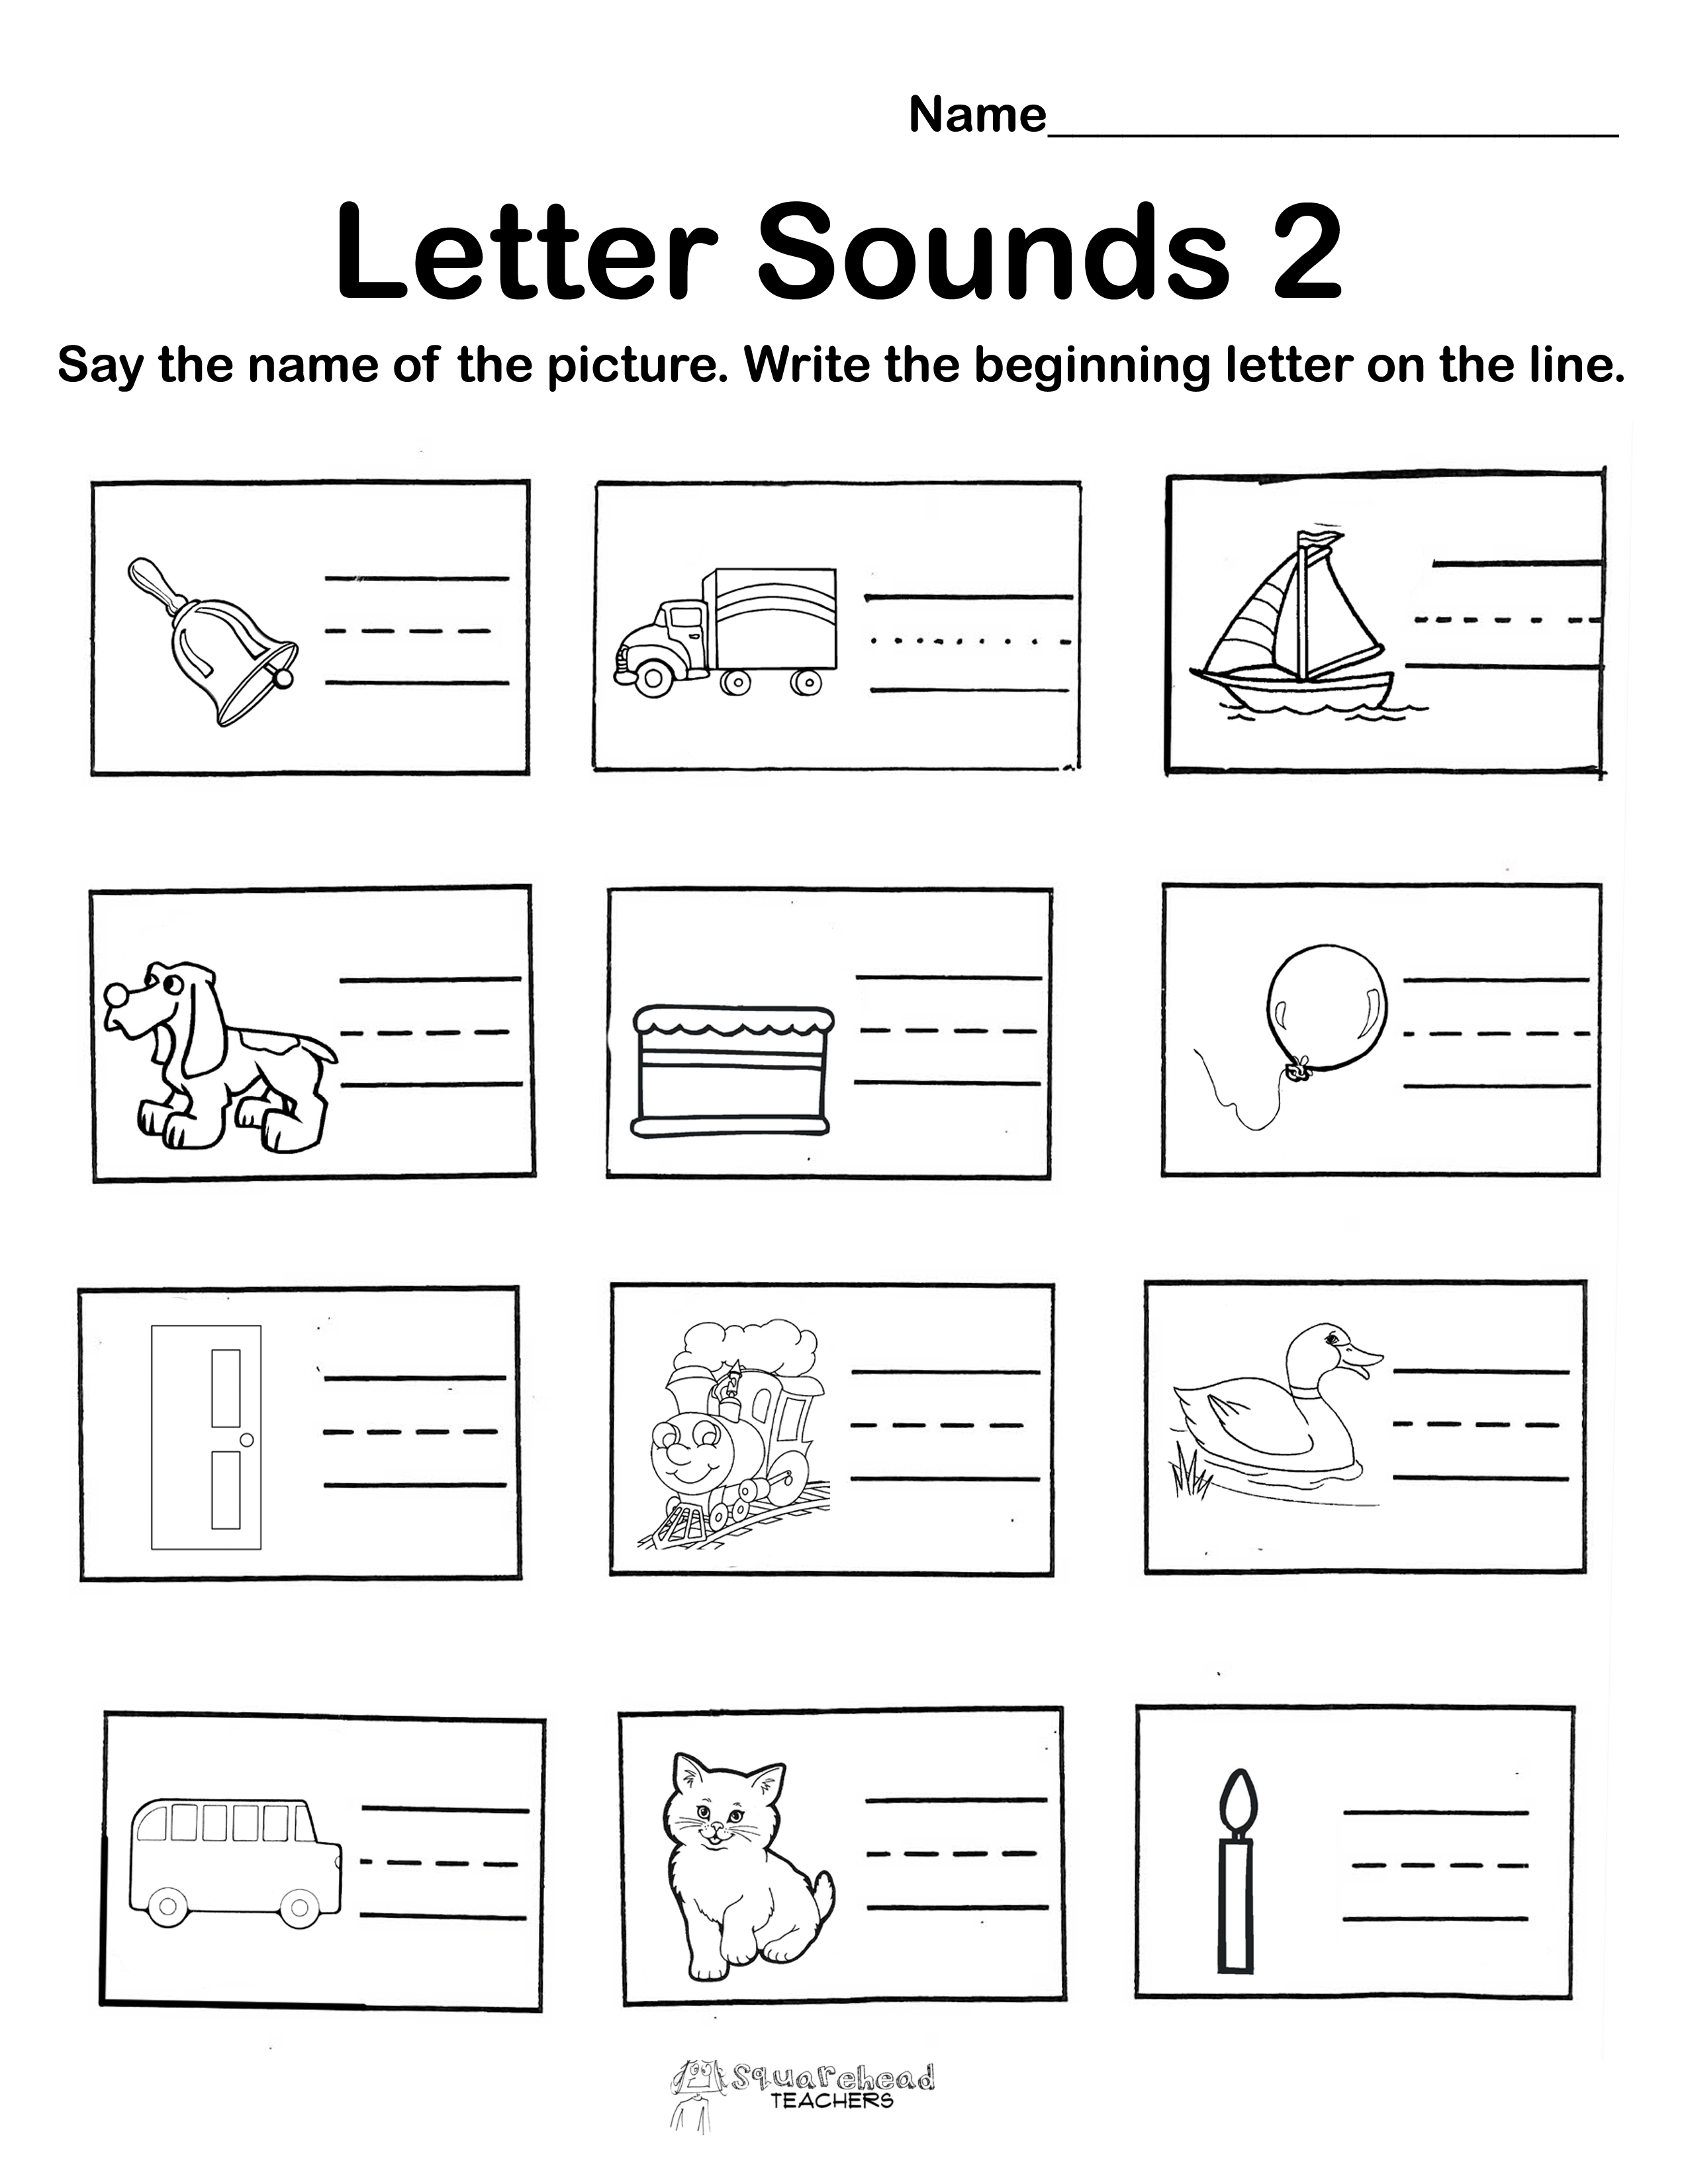 Beginning Letter Sounds Worksheet Image